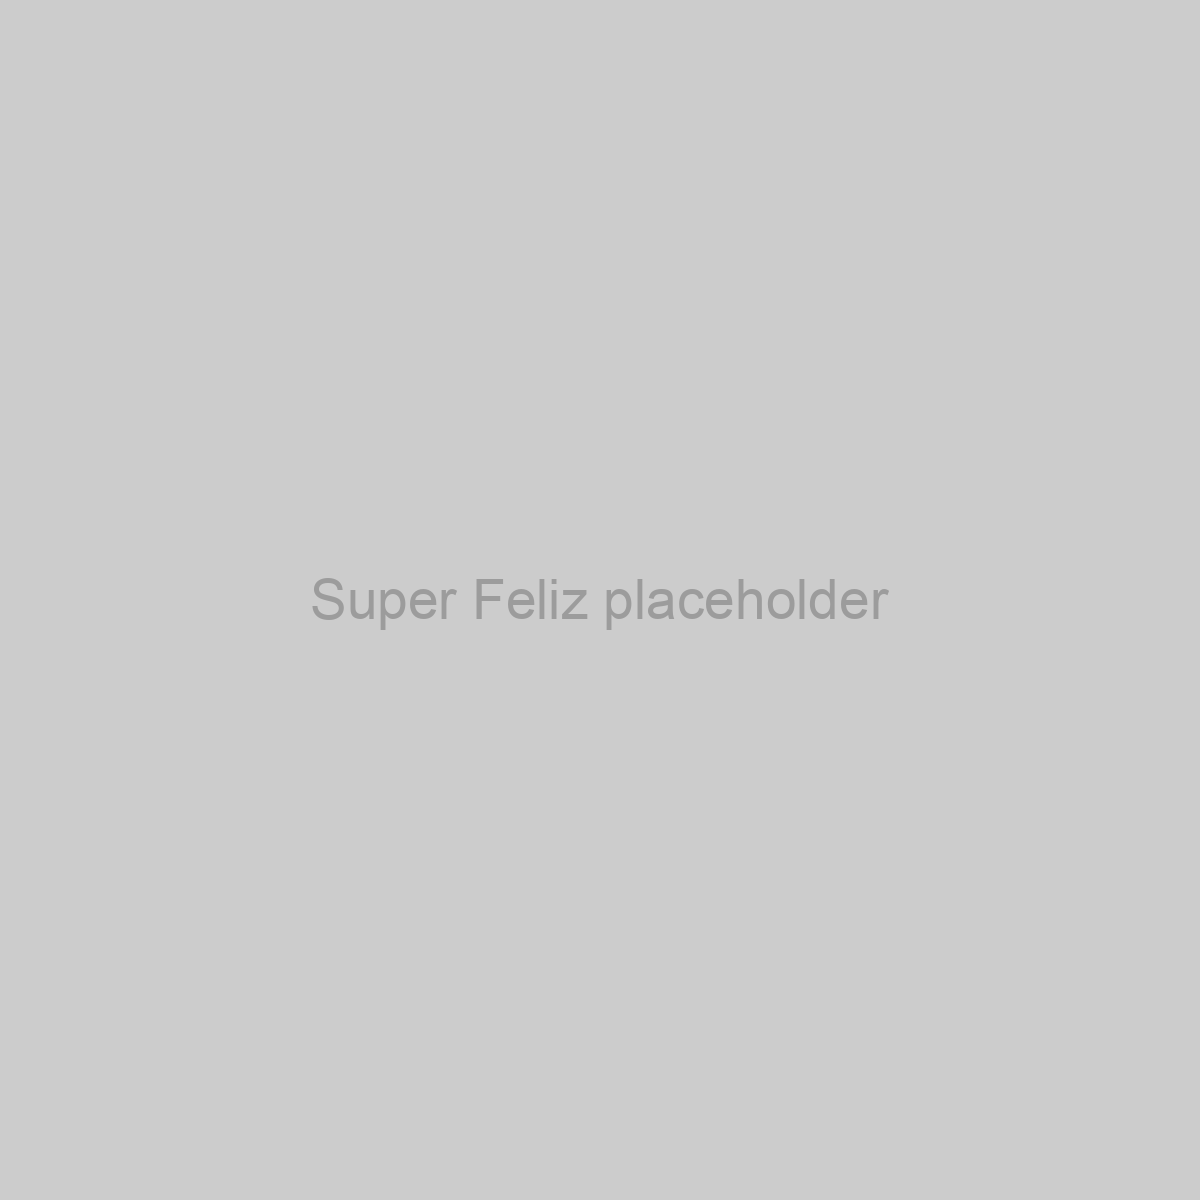 Super Feliz Placeholder Image